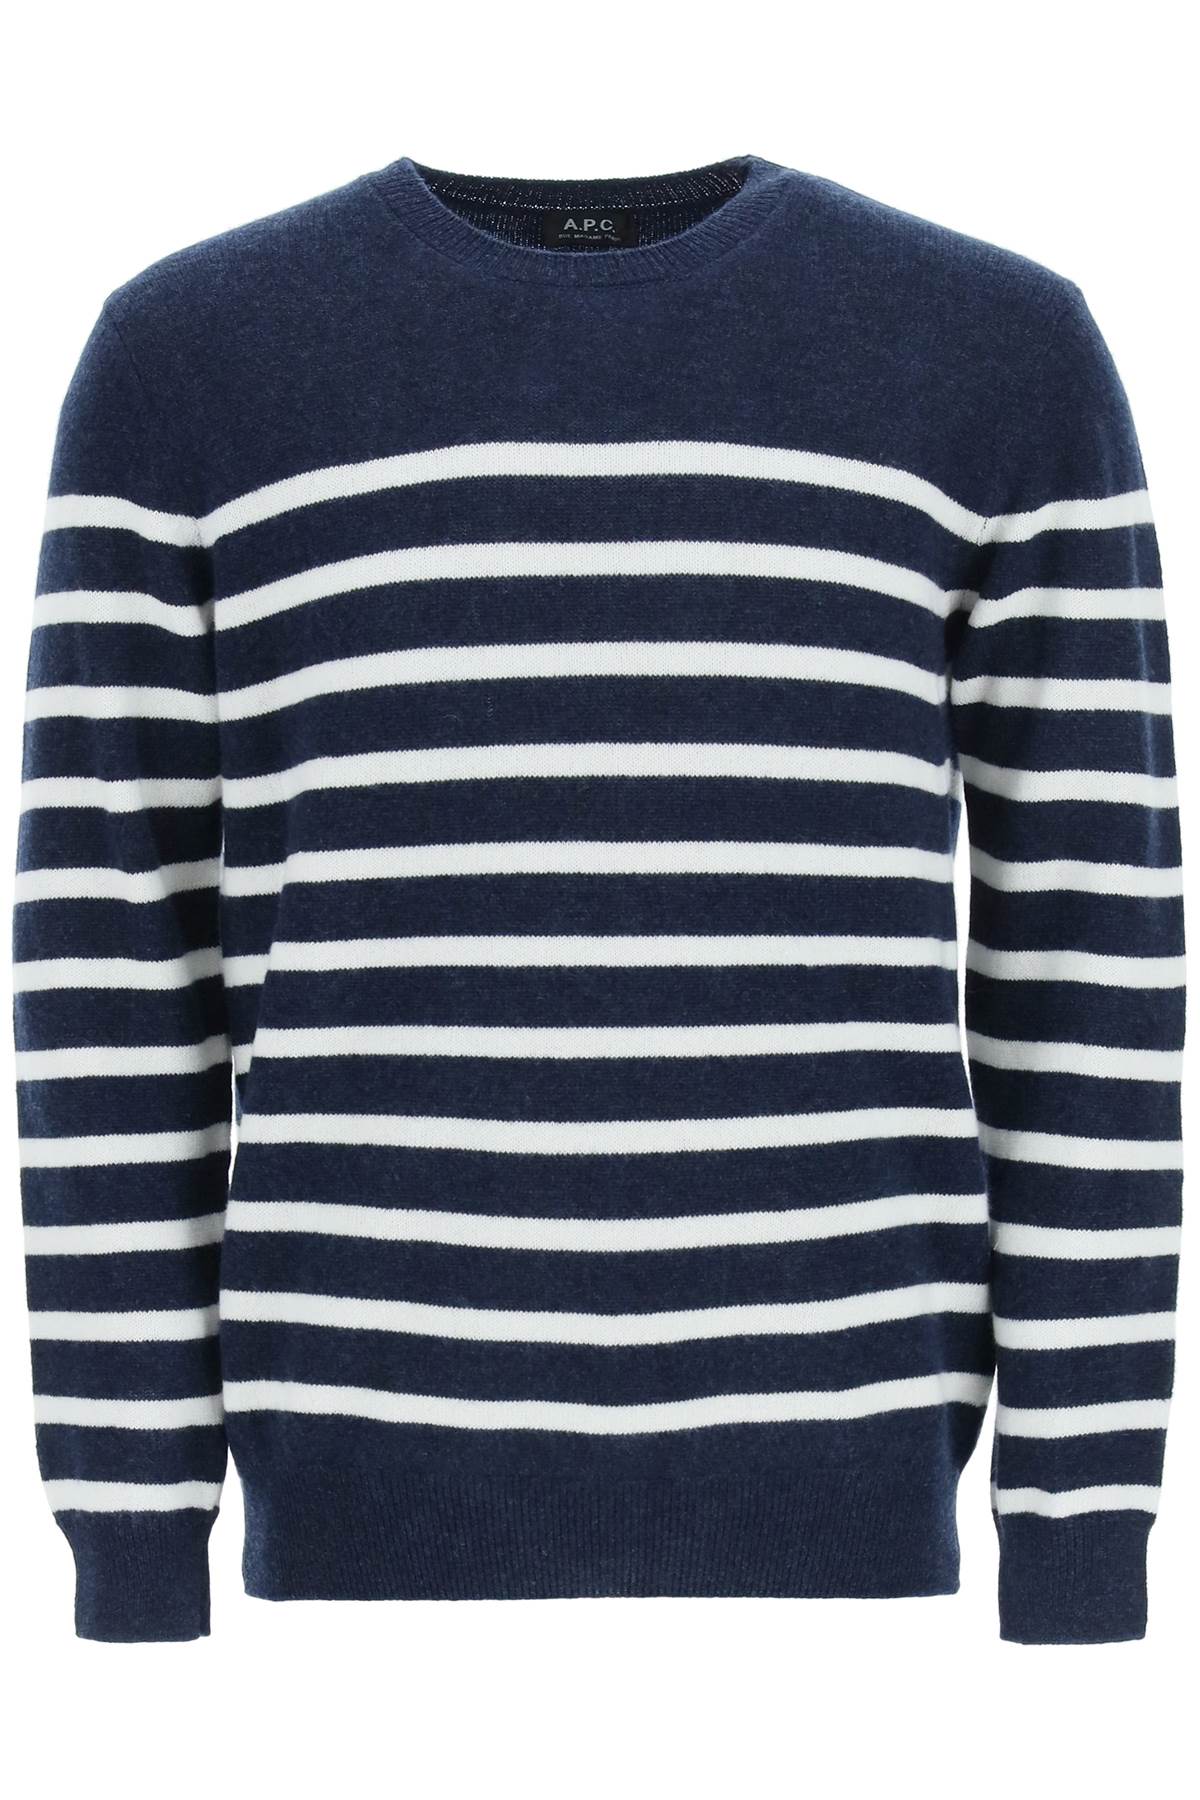 A.P.C. Travis Striped Sweater